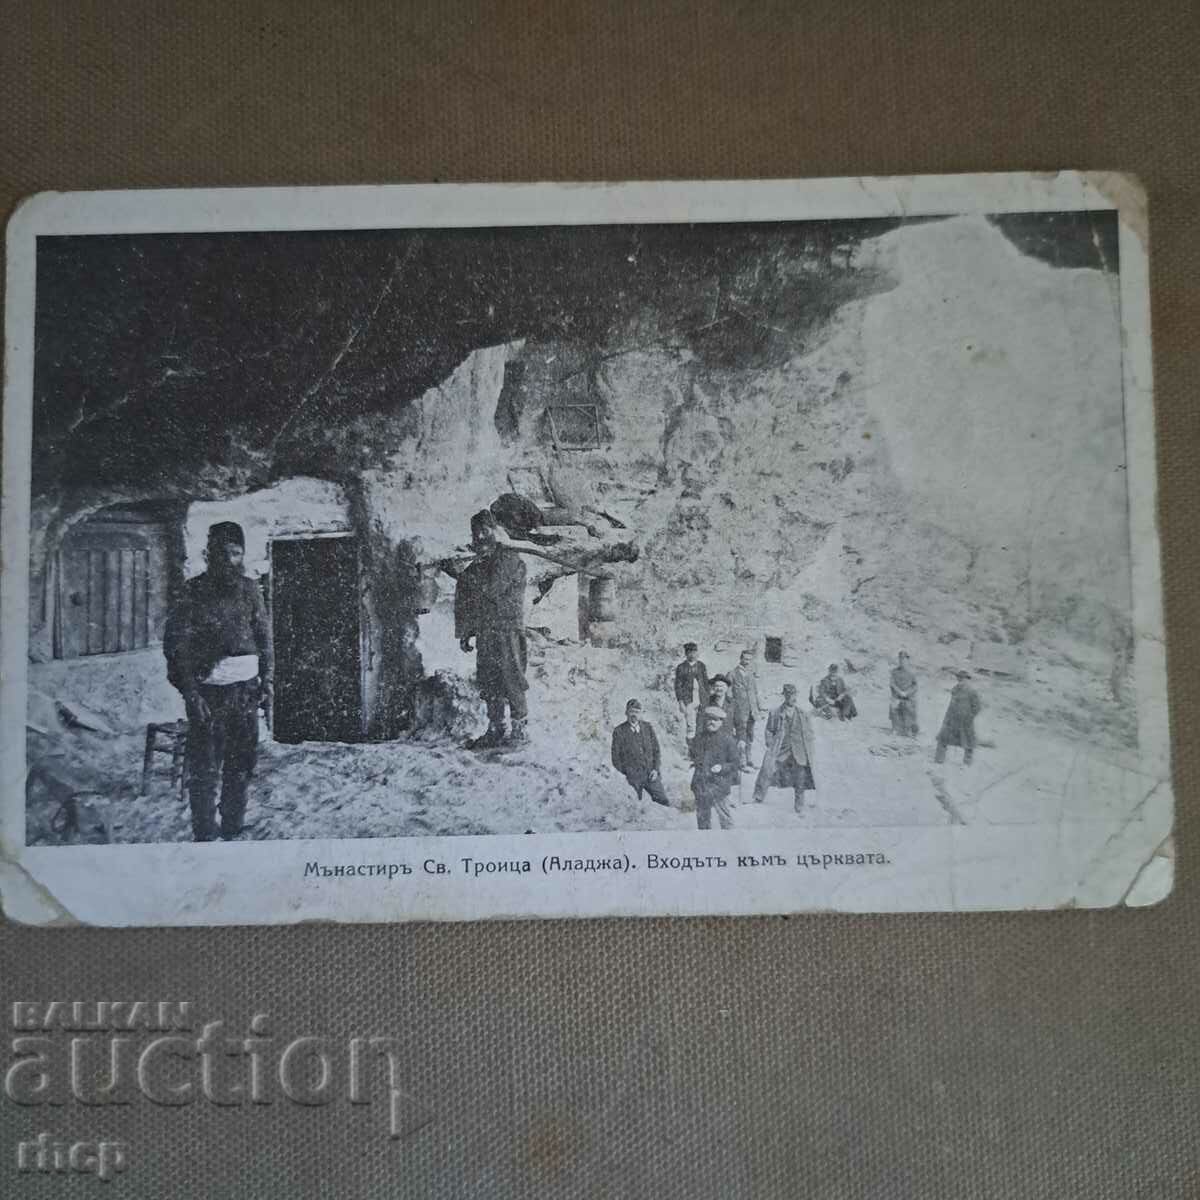 Aladzha Monastery, old postcard, 1920s